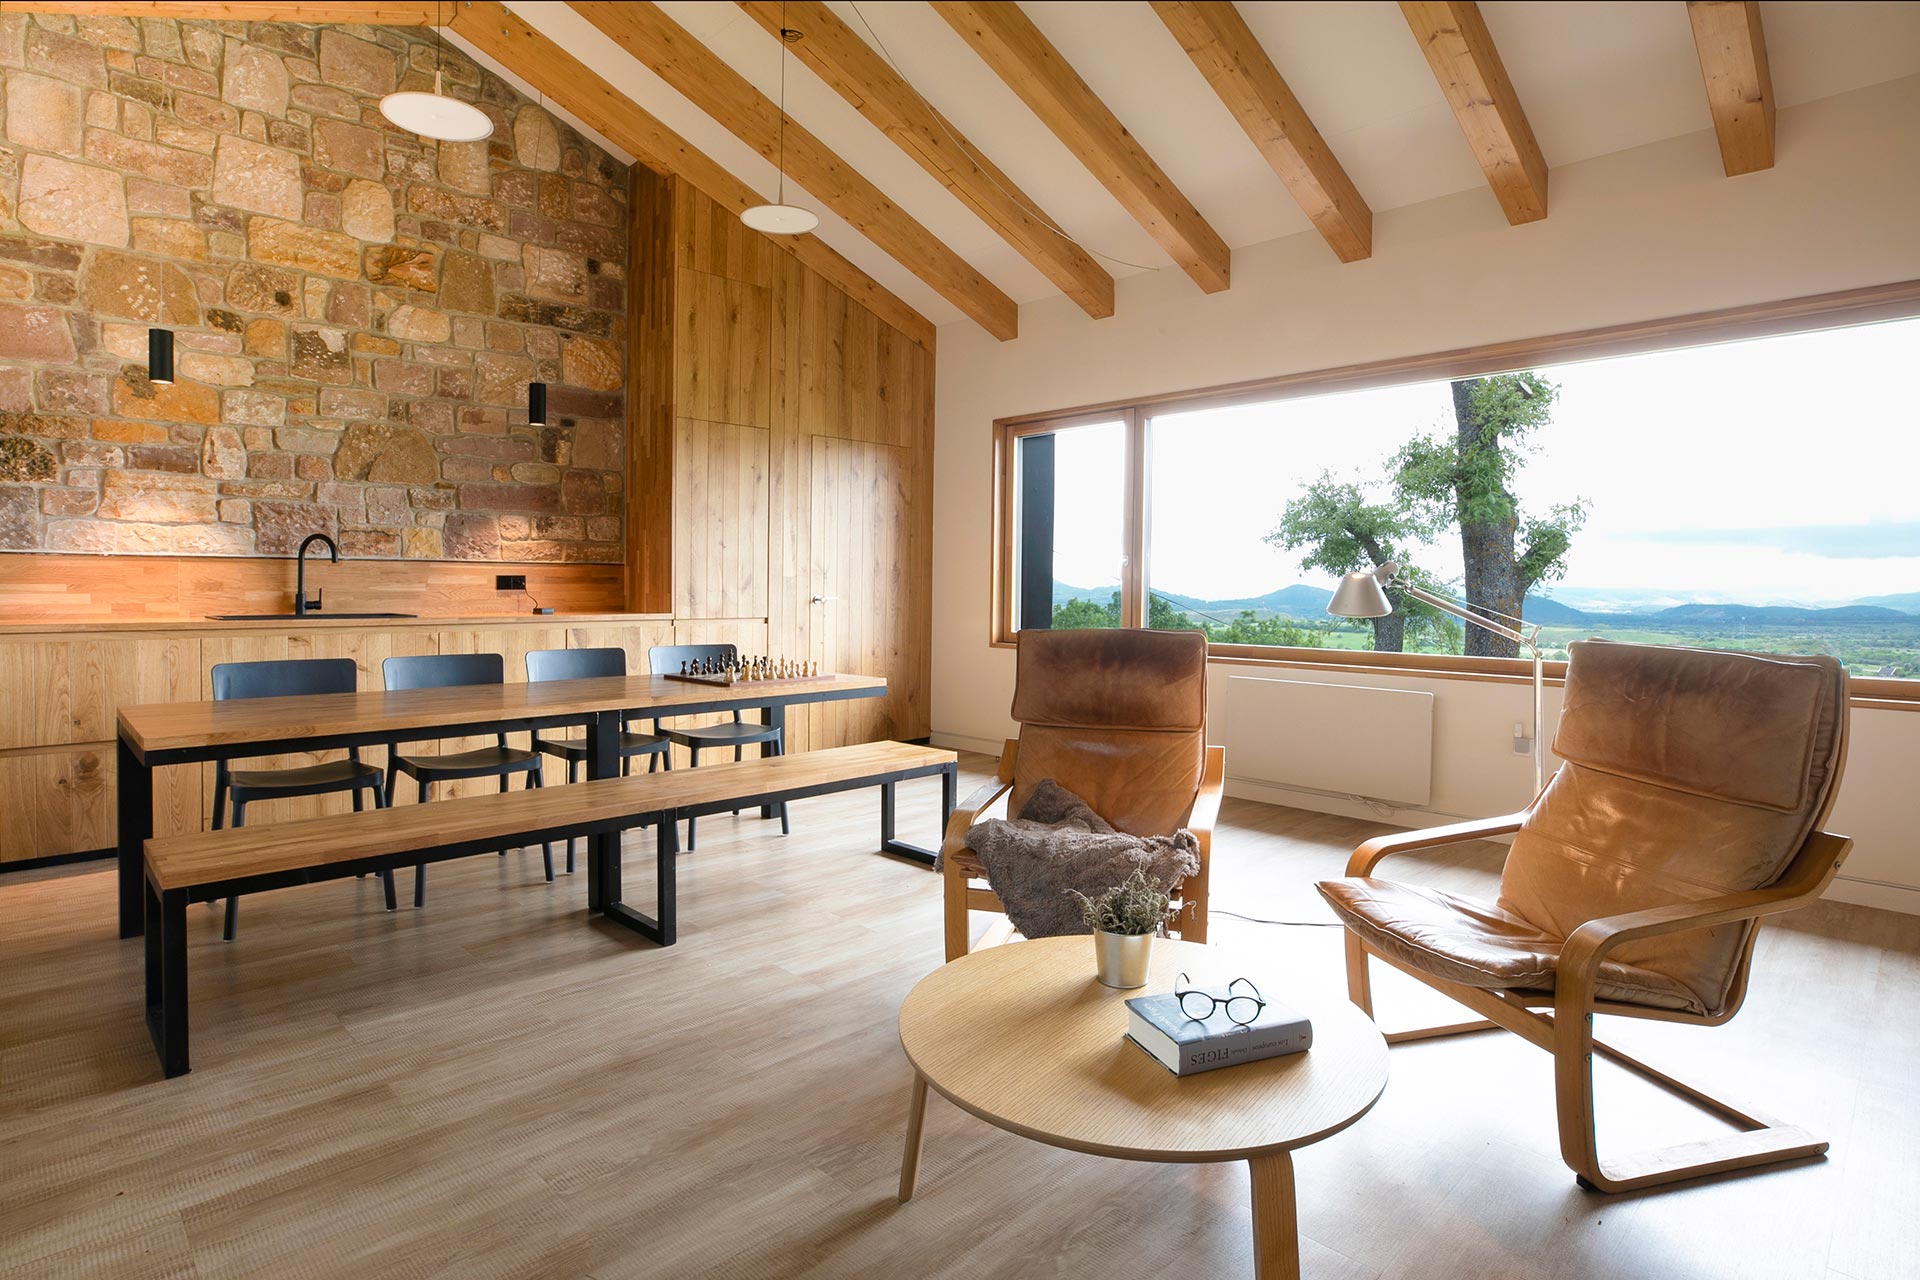 Ventana panorámica de refugio moderno en Proaño diseñado por Moah Arquitectos en Cantabria